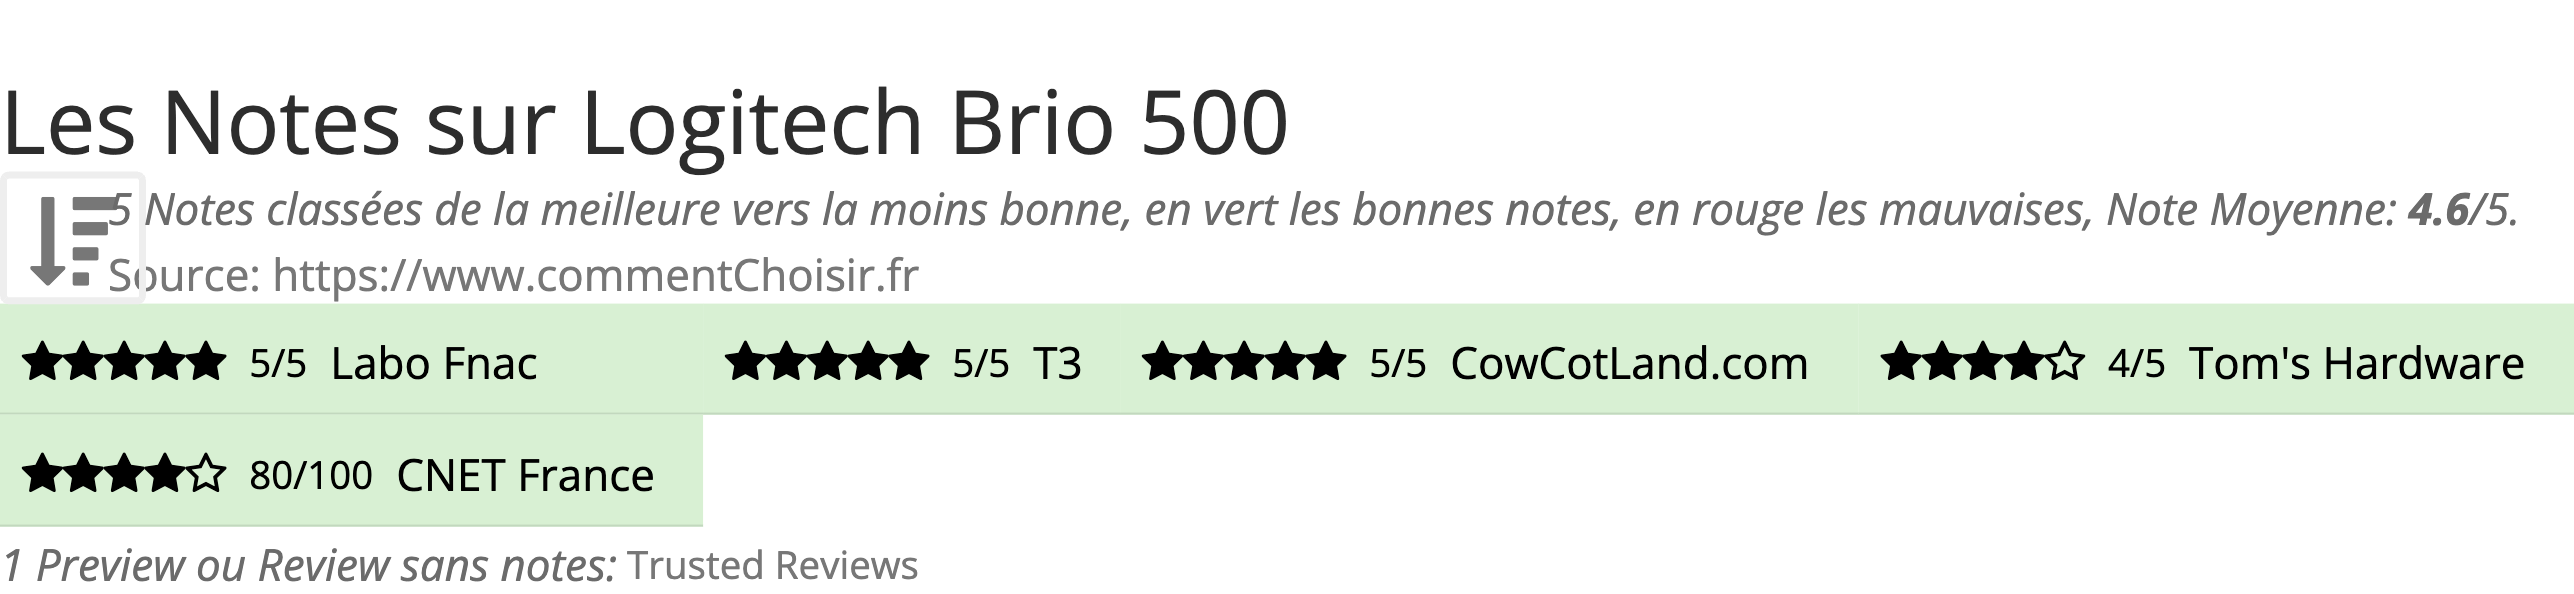 Ratings Logitech Brio 500